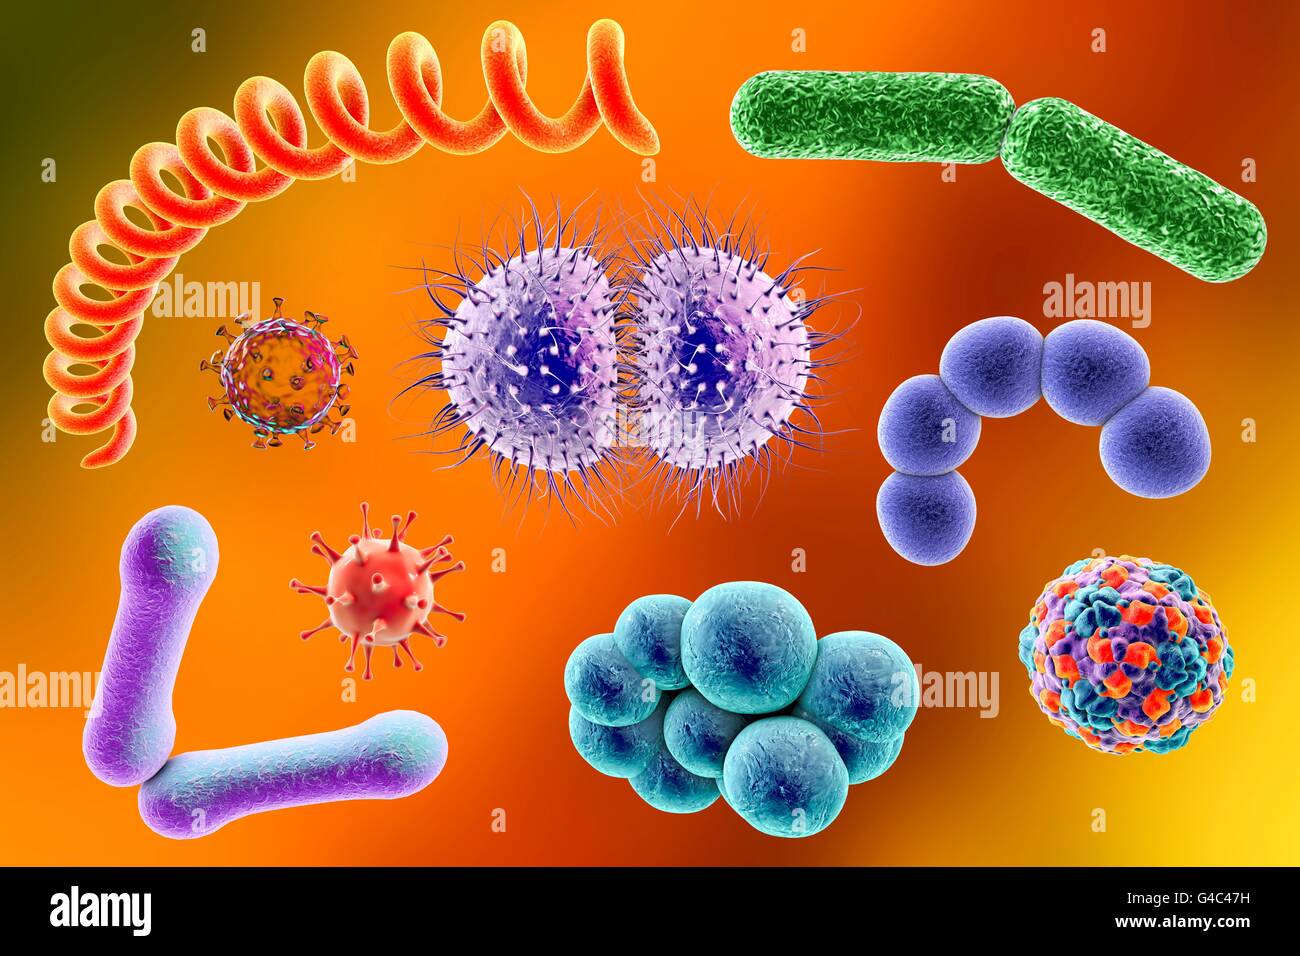 Les microbes. Illustration d'ordinateur d'un mélange contenant des microorganismes (bactéries et virus de types différents. Banque D'Images